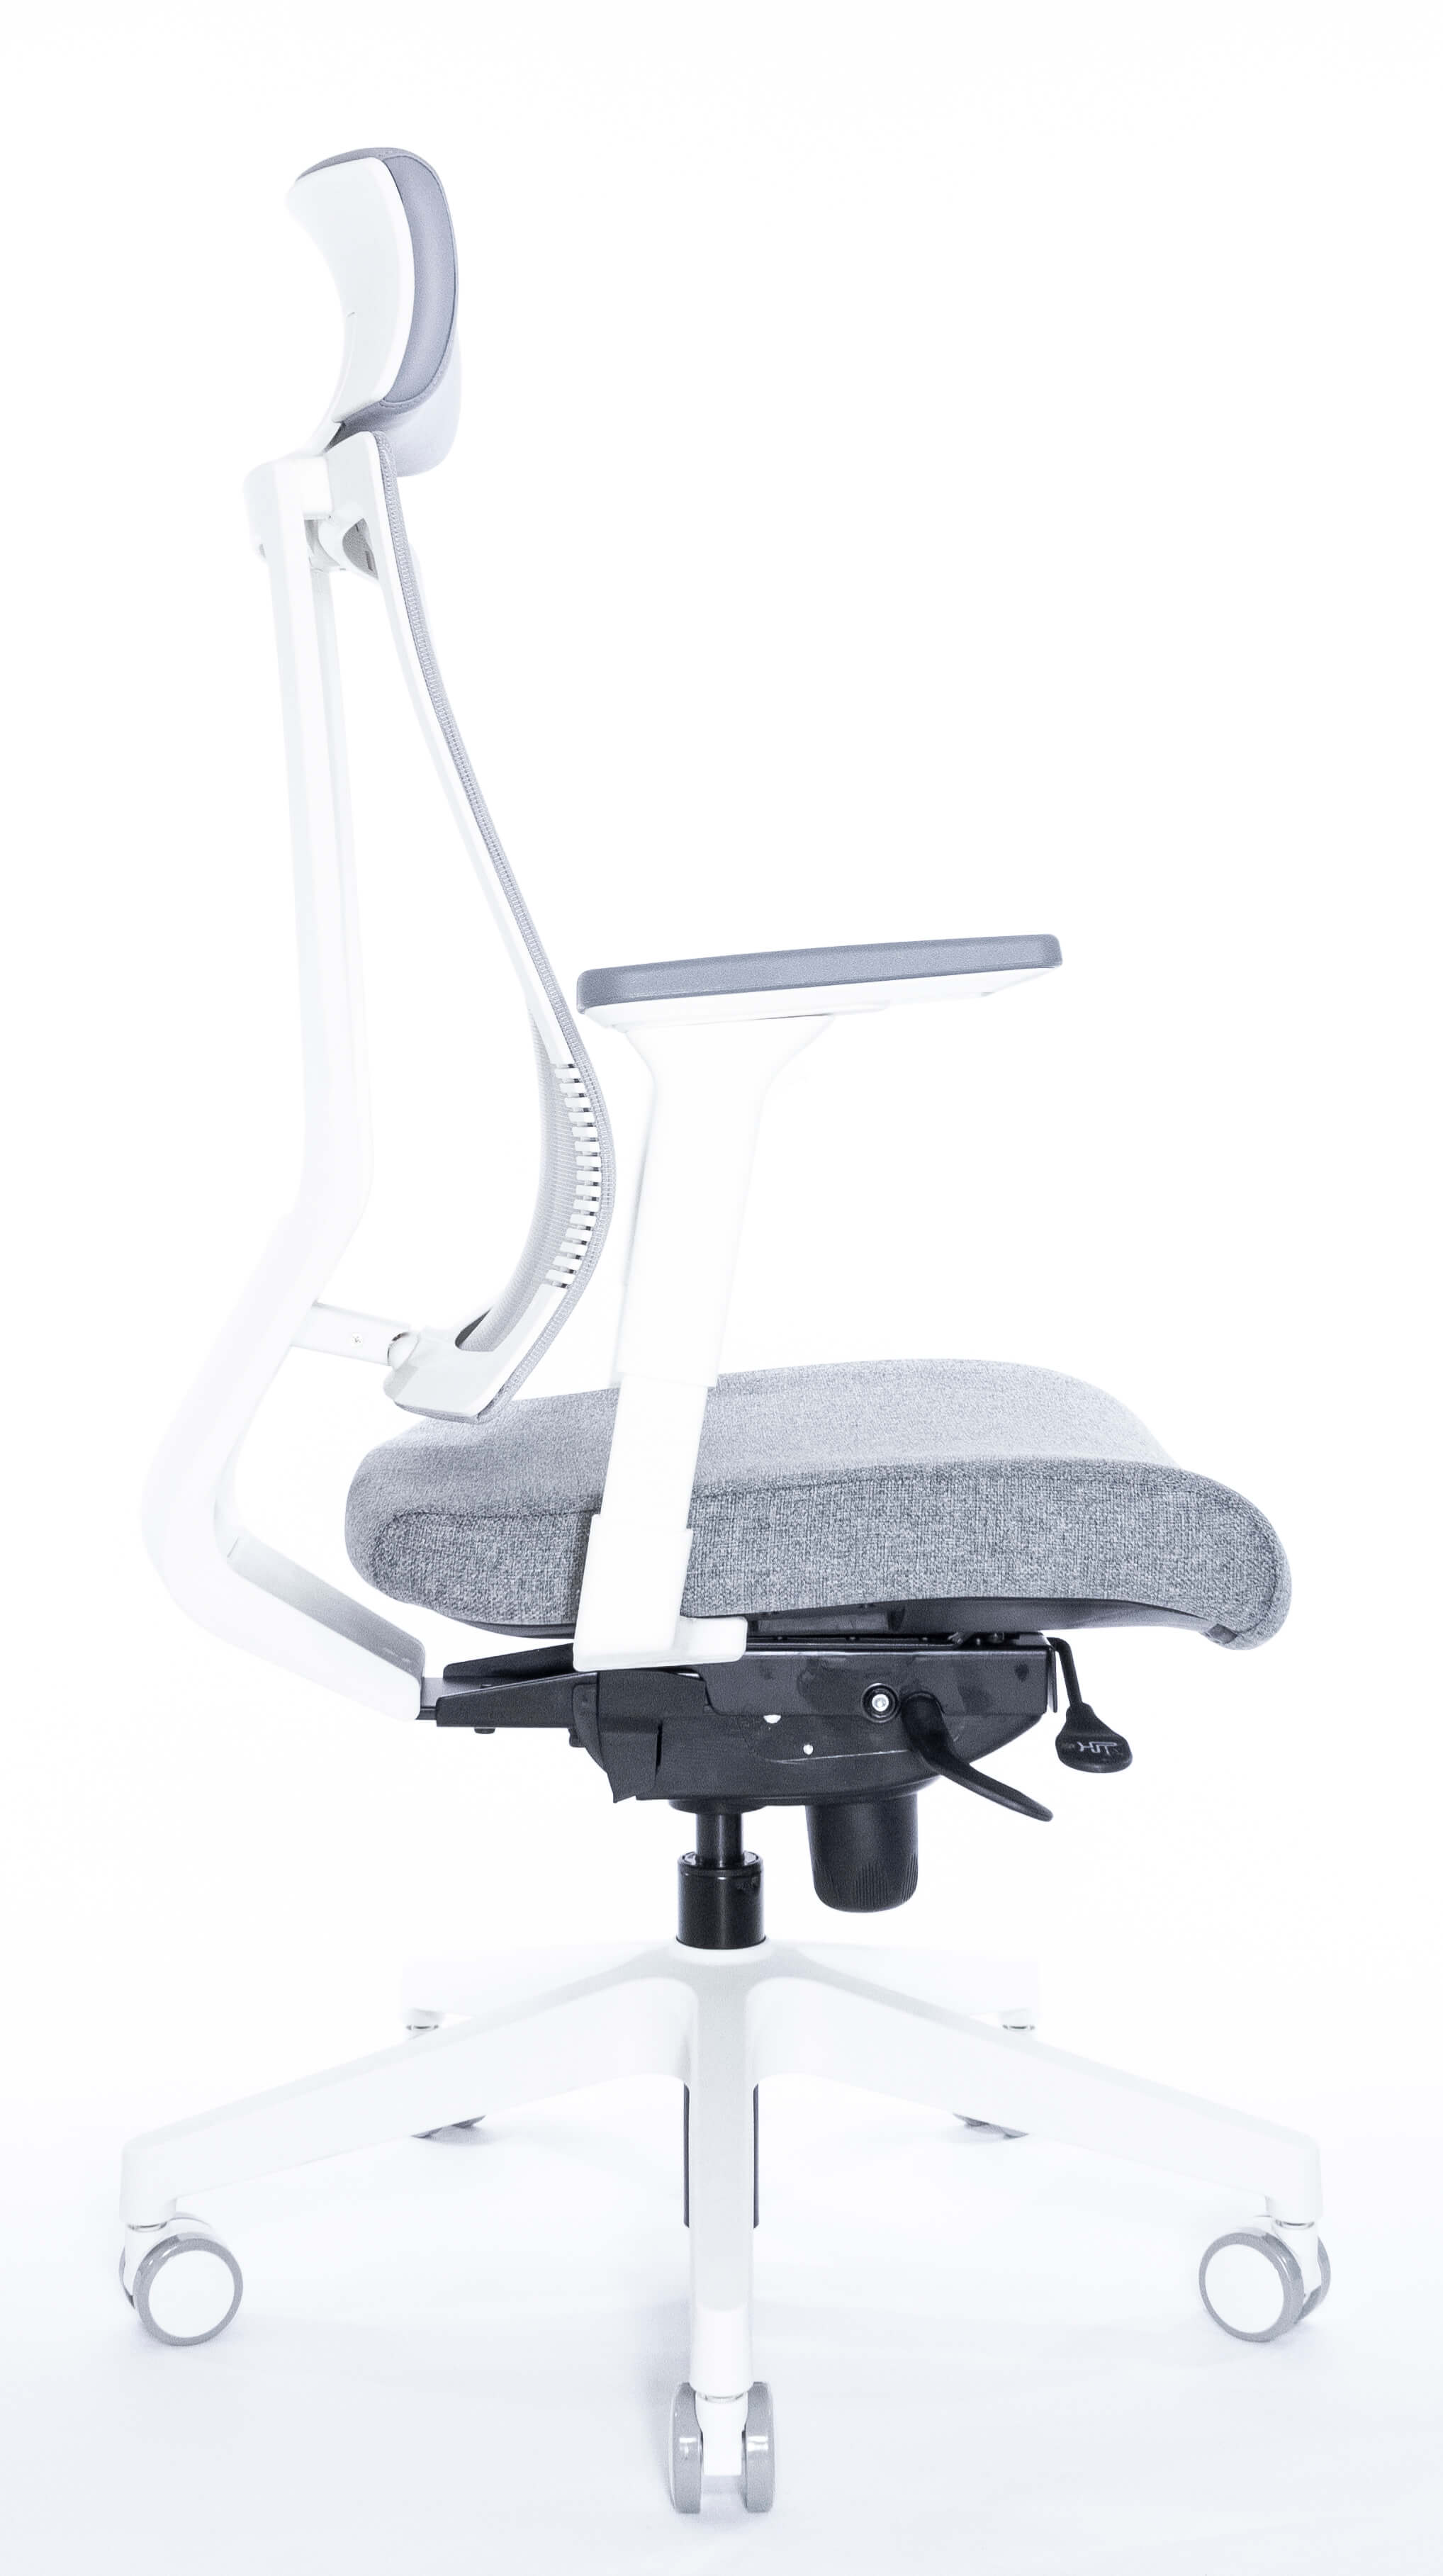 Эргономичное кресло Falto G-1 GON 01WAL/GY-GY (каркас белый, спинка серая, сиденье серое)